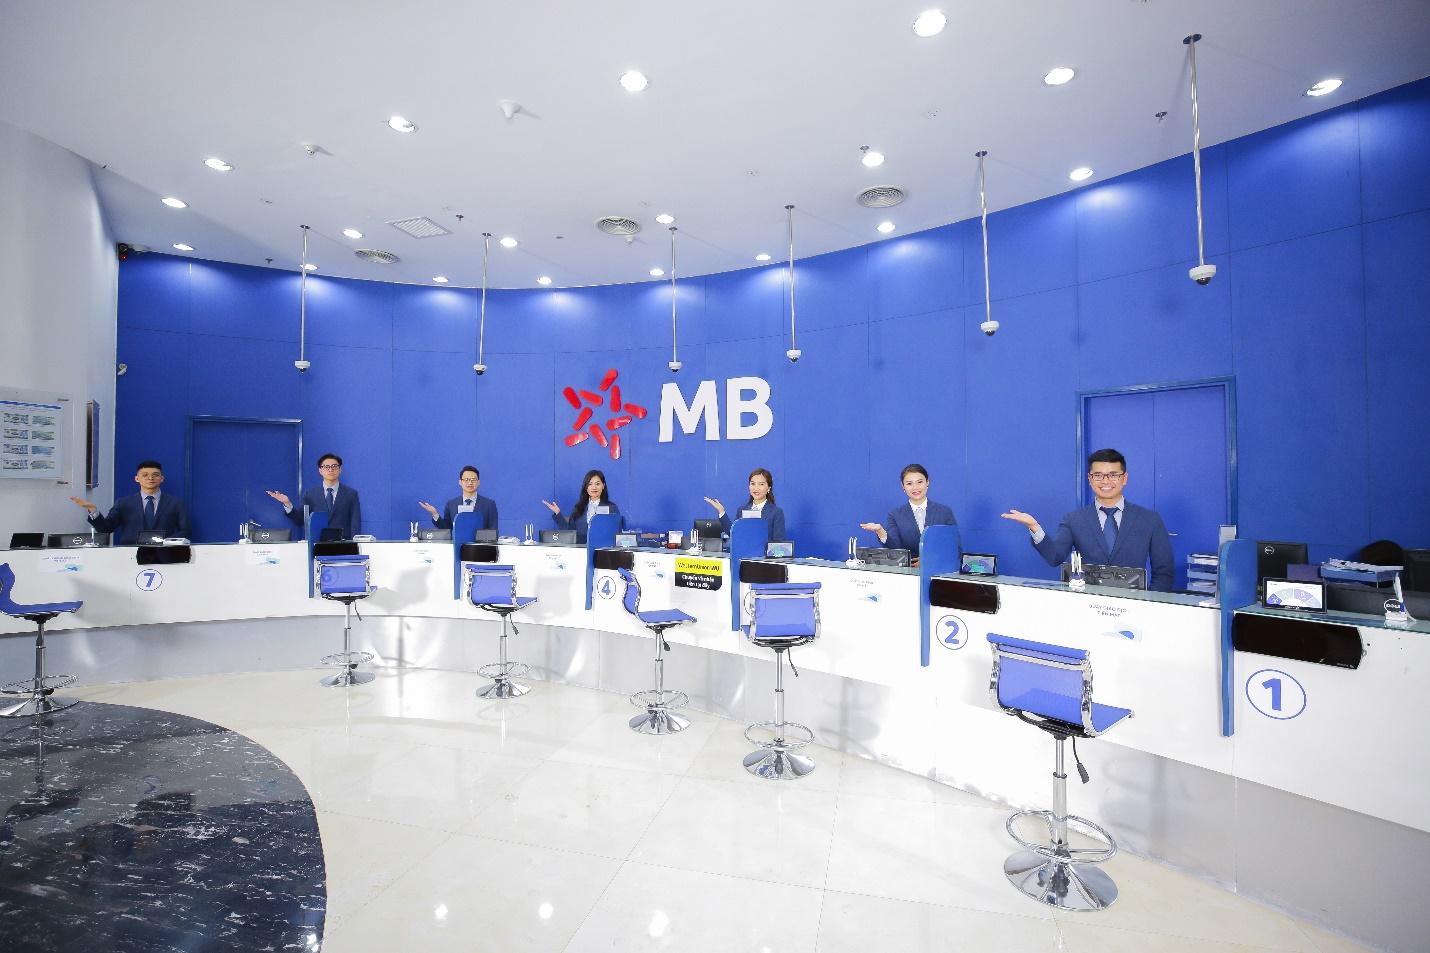 MB - Tập đoàn tài chính hàng đầu, tăng tốc chuyển đổi số - Ảnh 1.